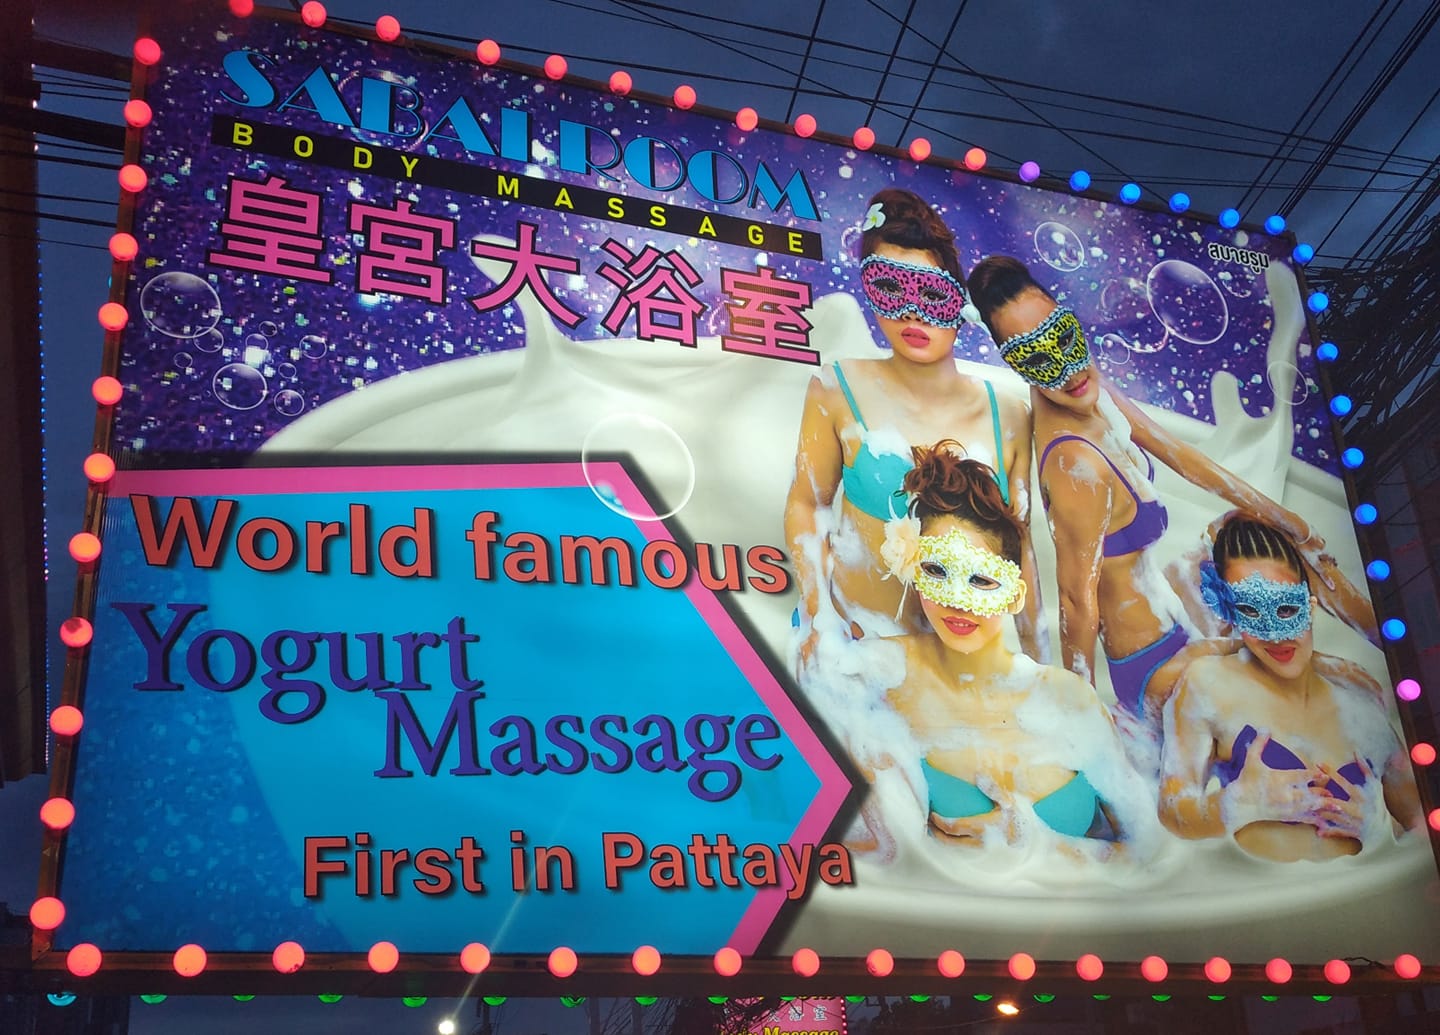 Soapy-Massage-Pattaya-Bangkok